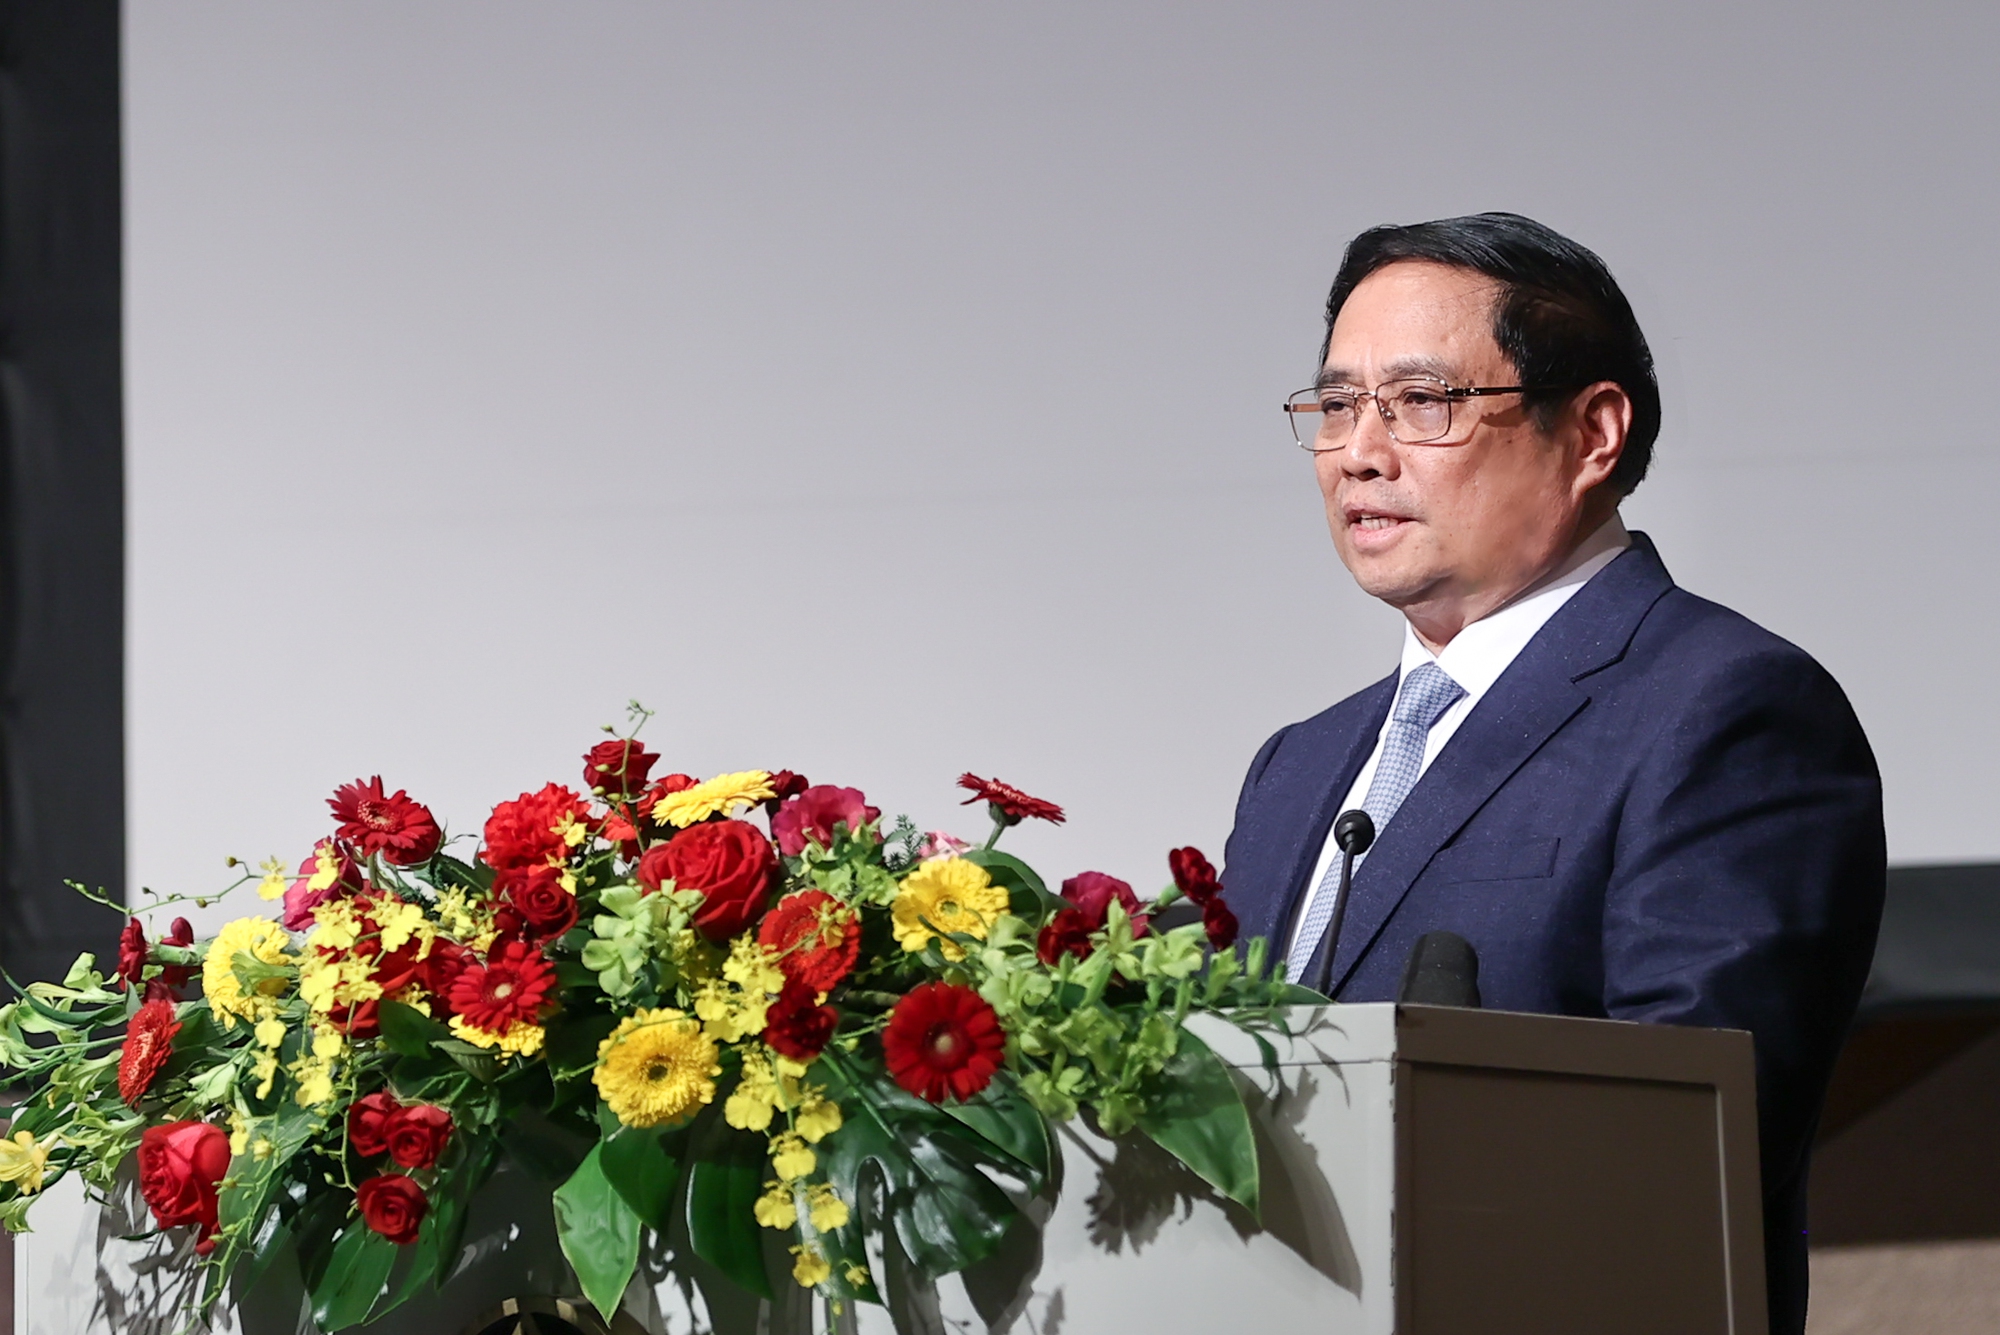 Thủ tướng đánh giá, trải qua 50 năm vun đắp và xây dựng, quan hệ hữu nghị và hợp tác Việt Nam-Nhật Bản, tin cậy chính trị giữa hai nước ở mức rất cao - Ảnh: VGP/Nhật Bắc